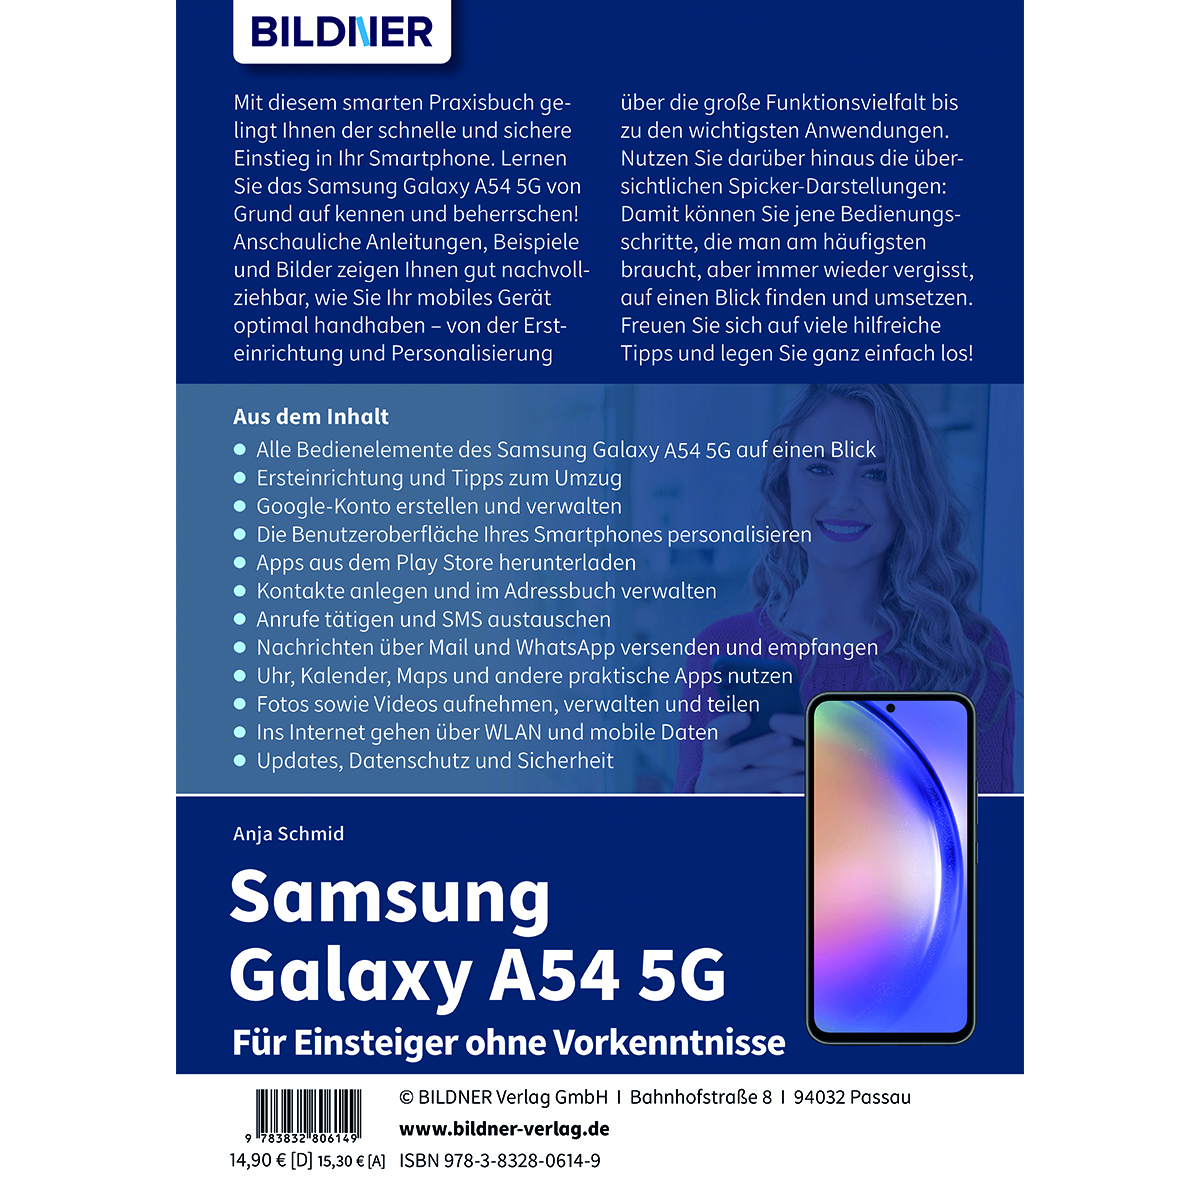 Samsung A54 - Galaxy Vorkenntnisse Einsteiger Für ohne